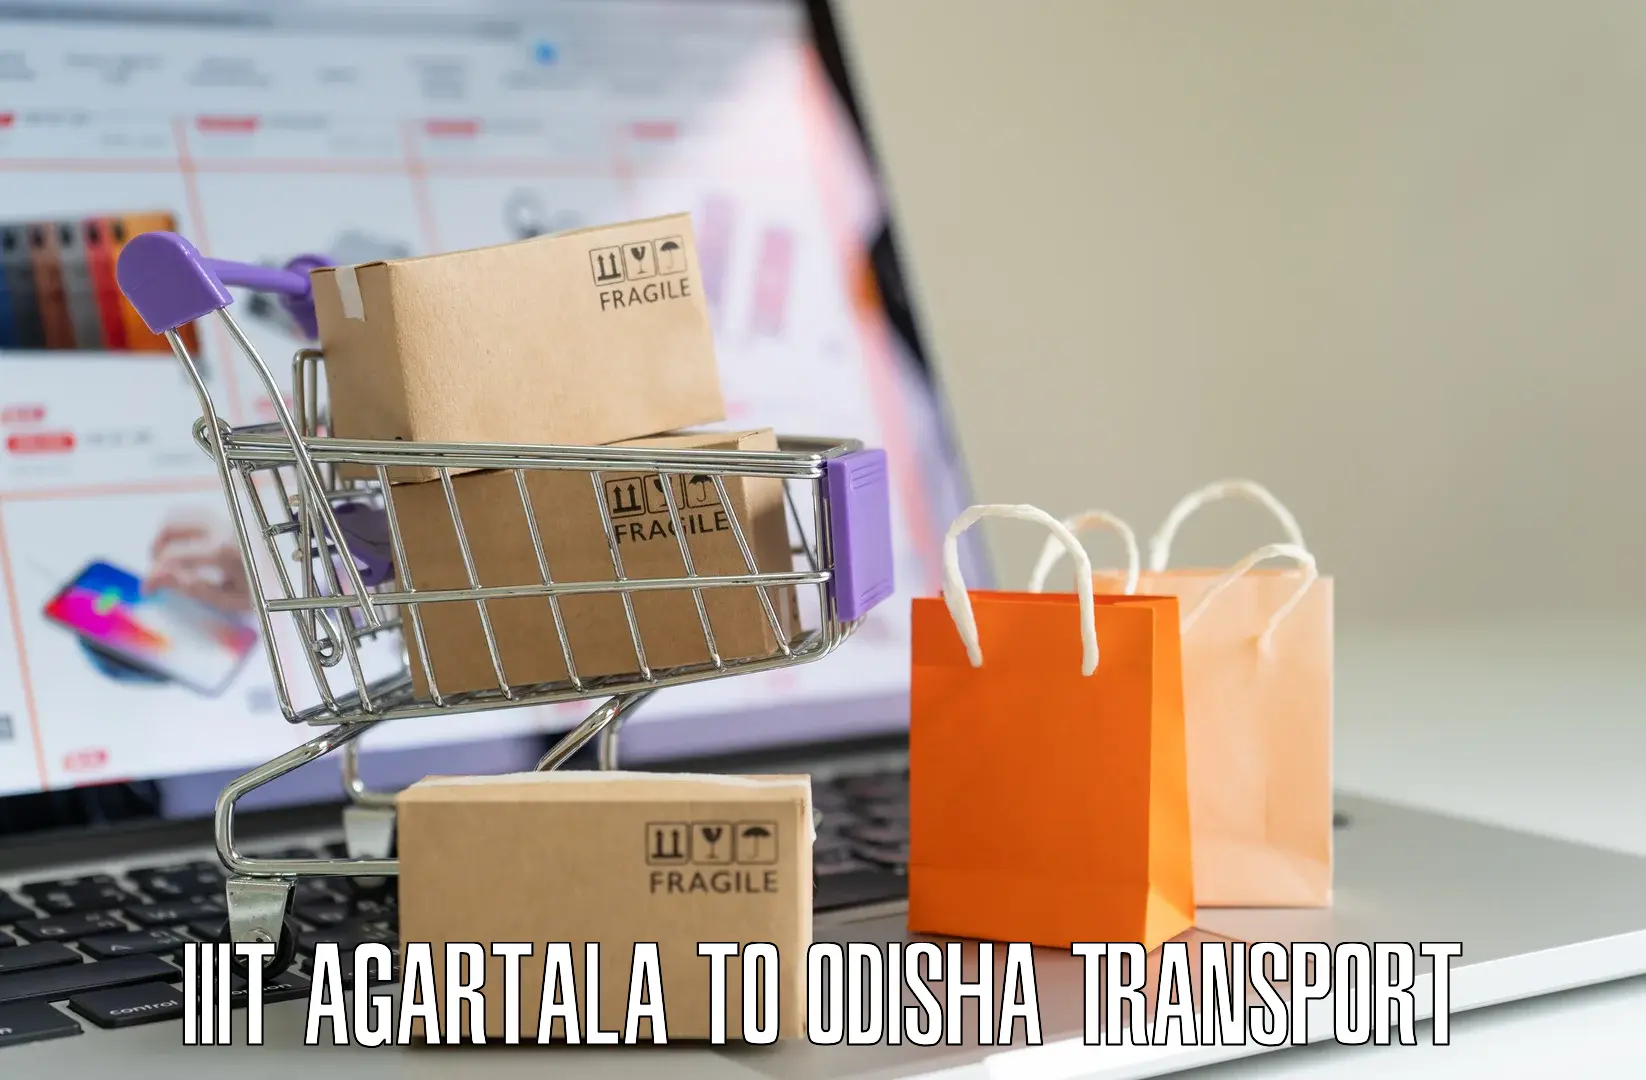 Shipping partner IIIT Agartala to Tihidi